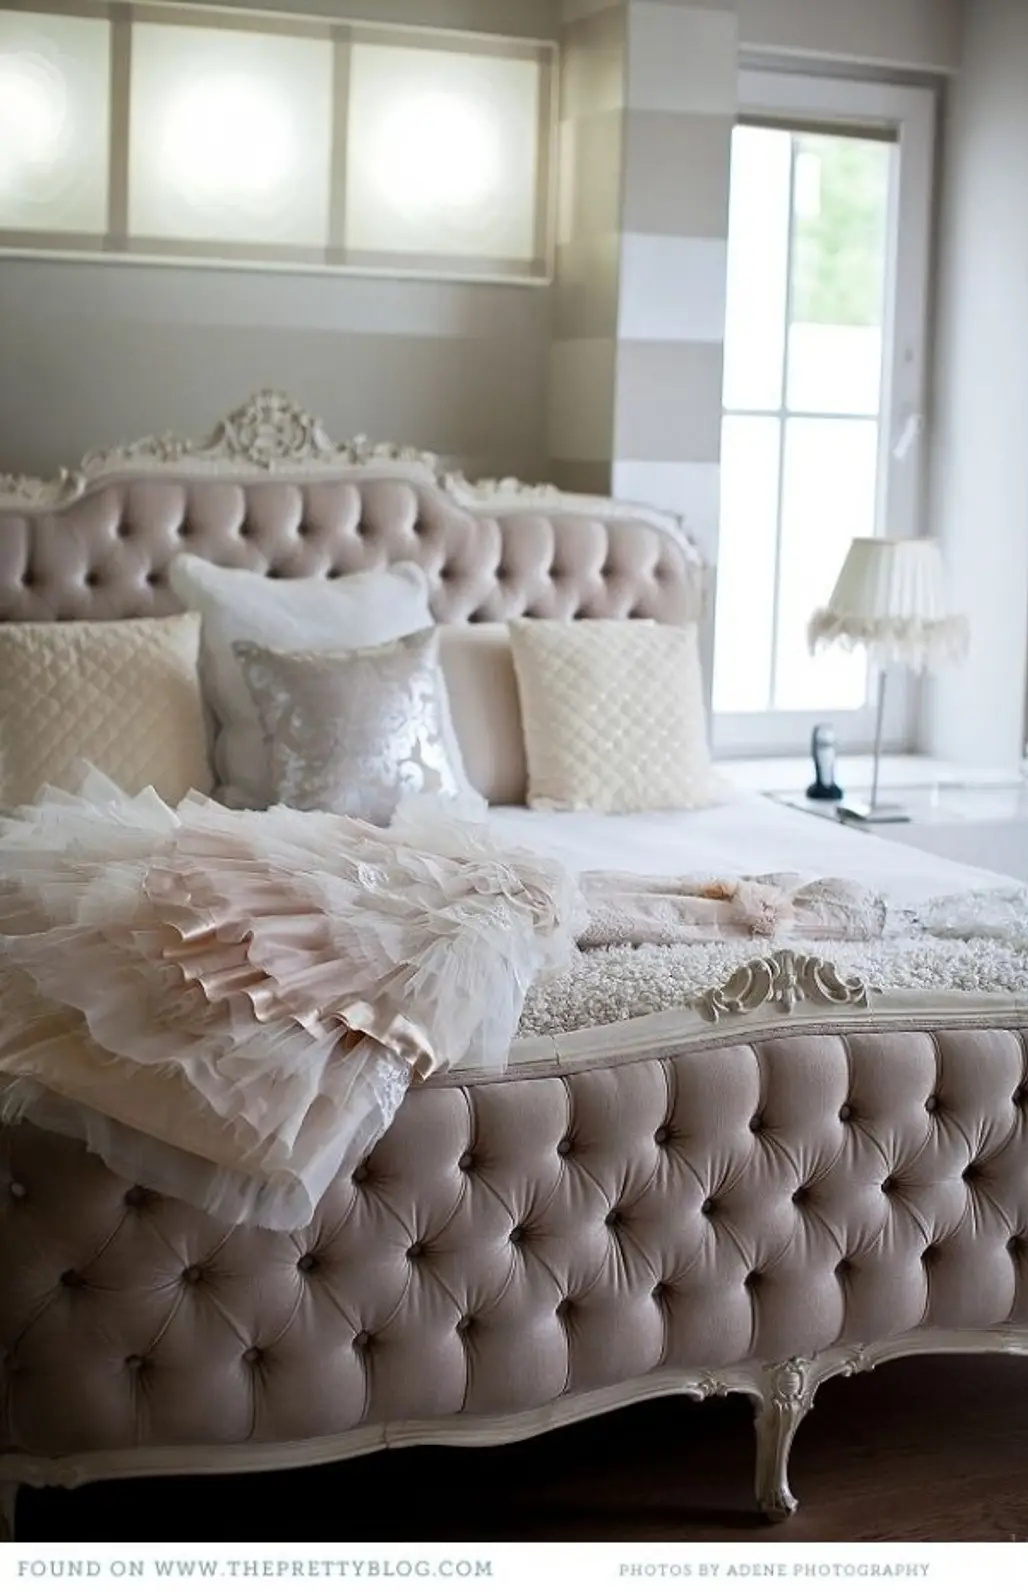 furniture,room,duvet cover,bed,bed sheet,